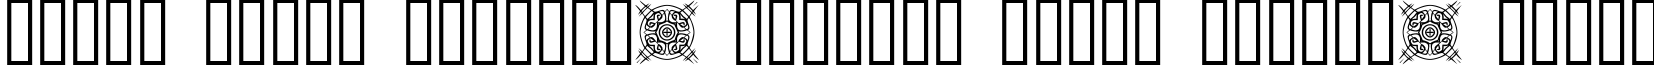 Пример написания шрифтом FontCo Designs 1 текста на белорусском